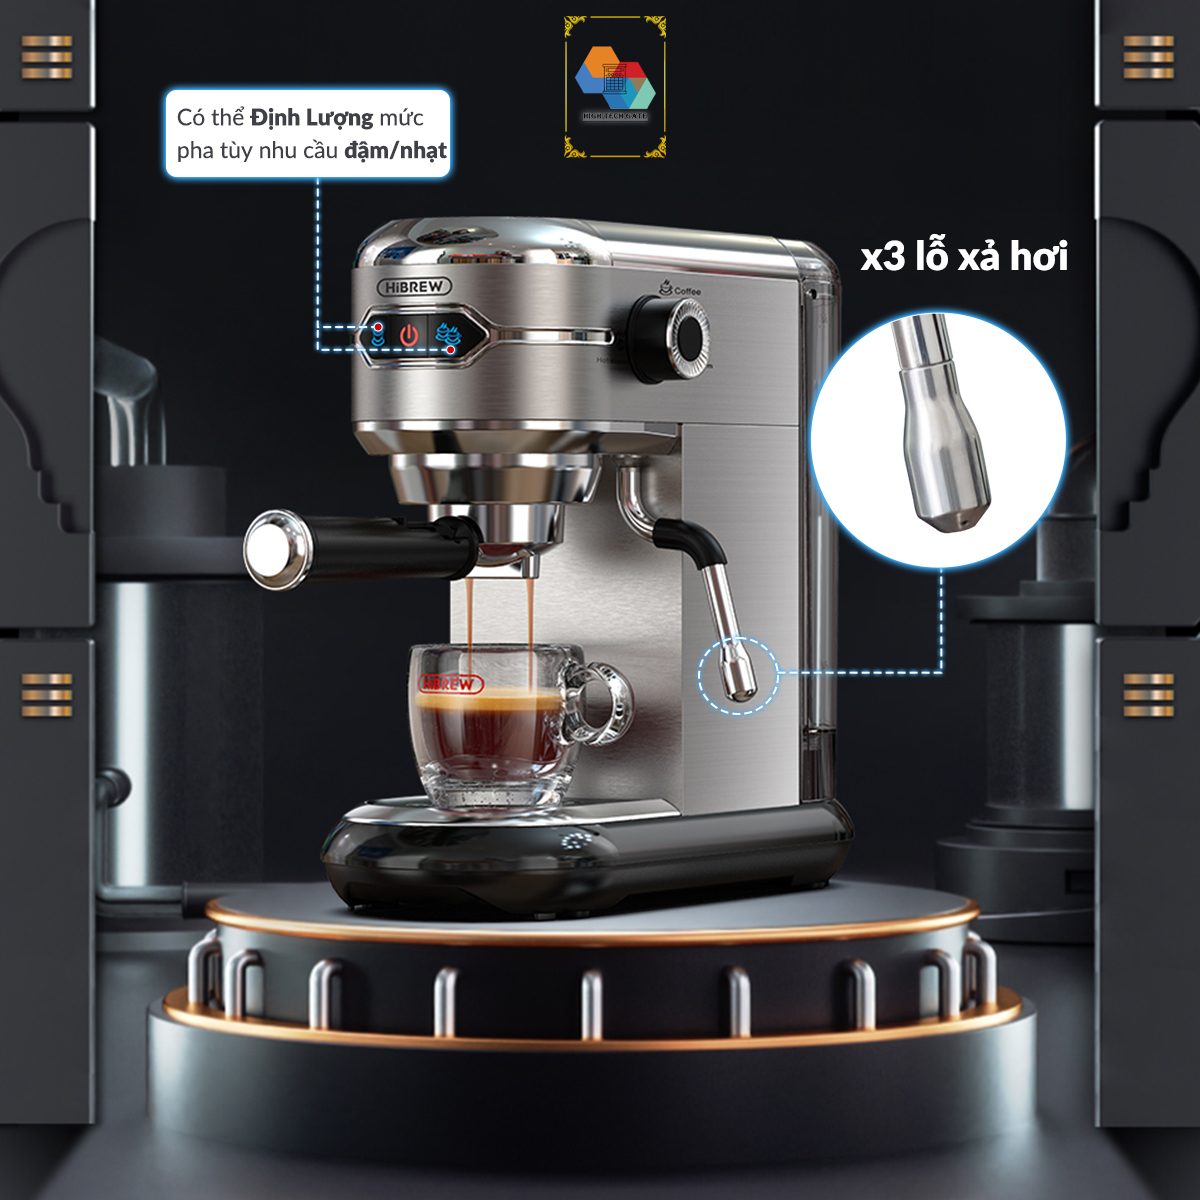 Máy pha cafe espresso tự động hibrew h11 siêu nhỏ gọn 12cm, công suất 1450w - ảnh sản phẩm 6